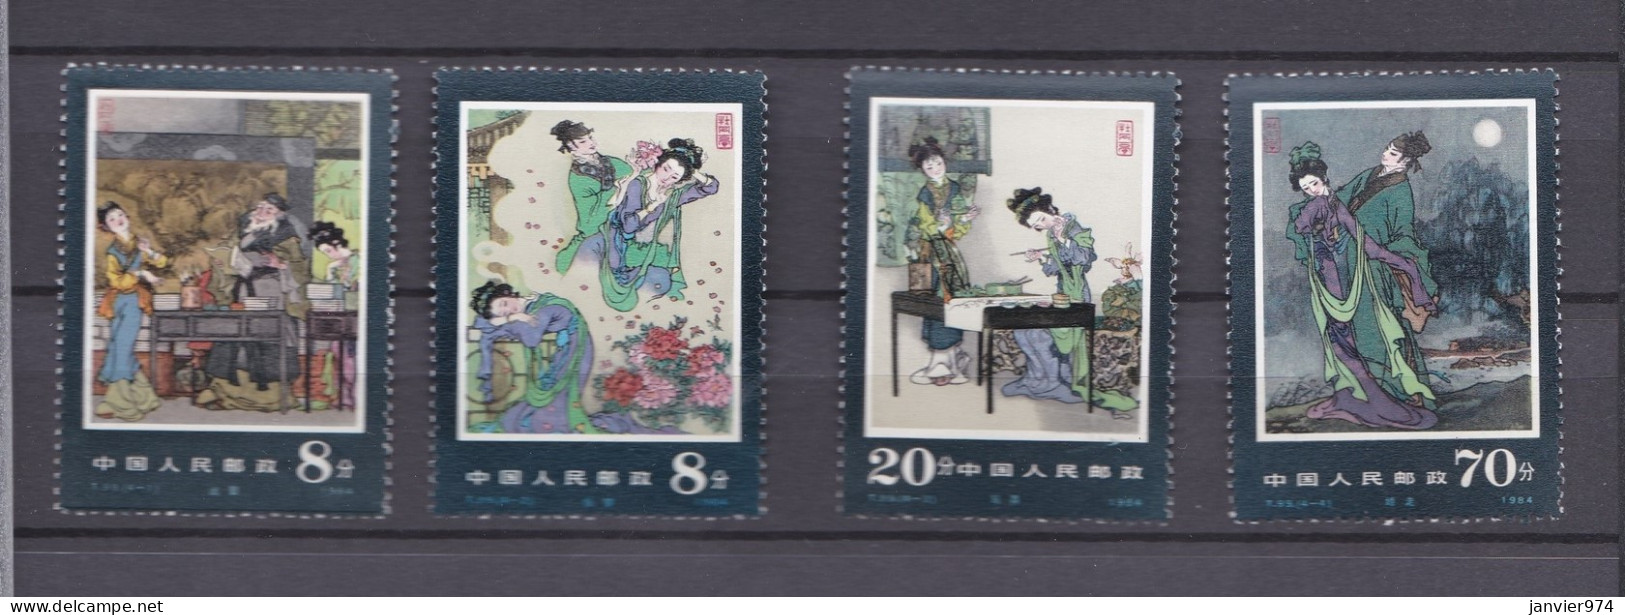 Chine 1984, Théâtre Le Pavillon De La Pivoine, La Serie Complète 1973 à 1976, 4 Timbres Neufs , Voir Scan Recto Verso - Unused Stamps